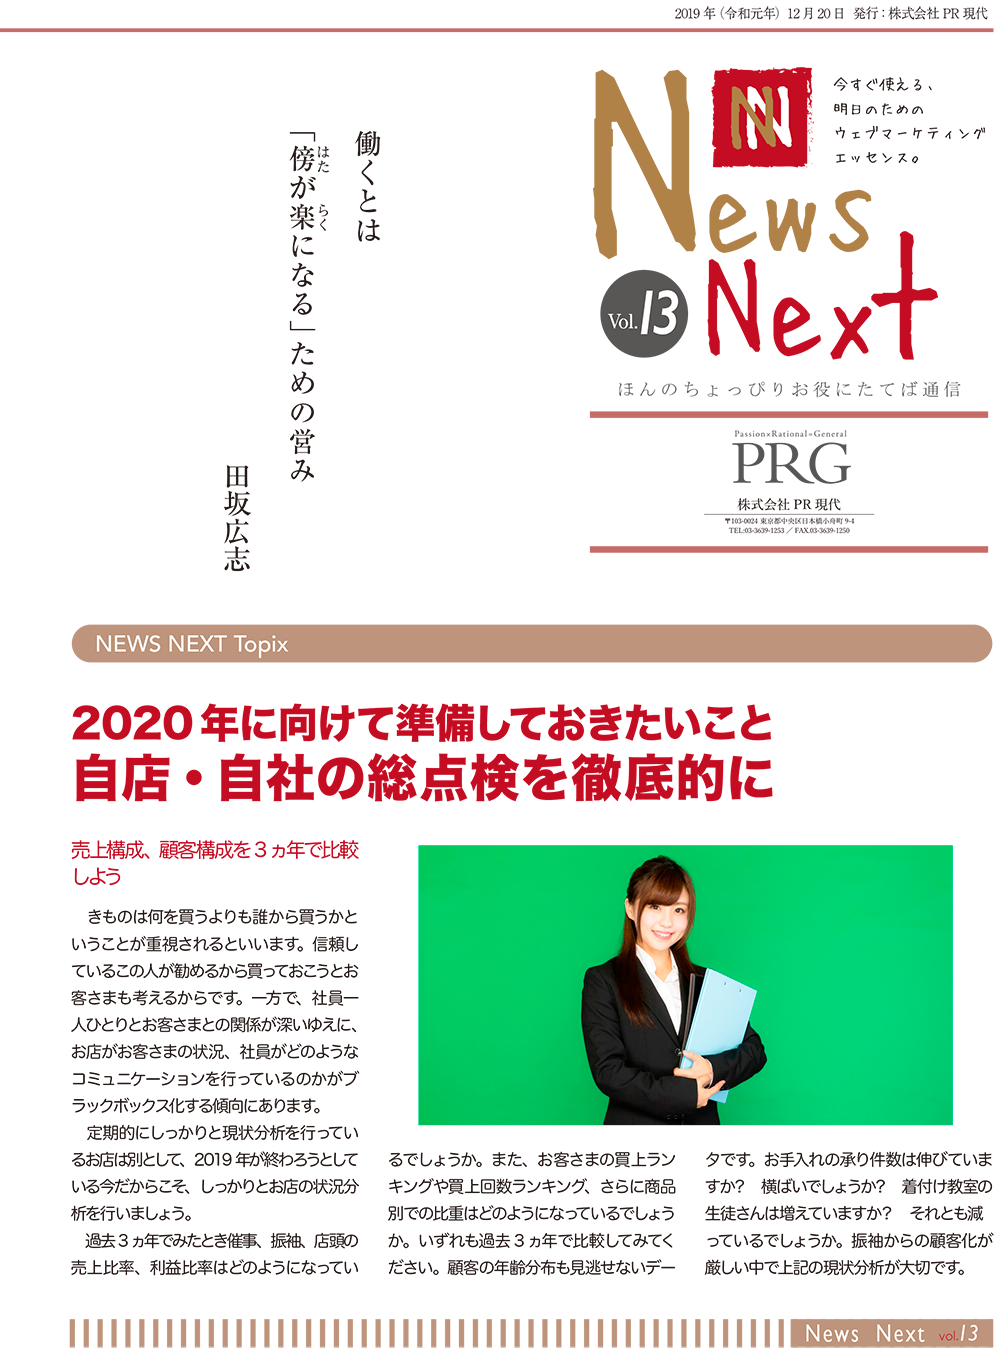 News NEXT vol.13